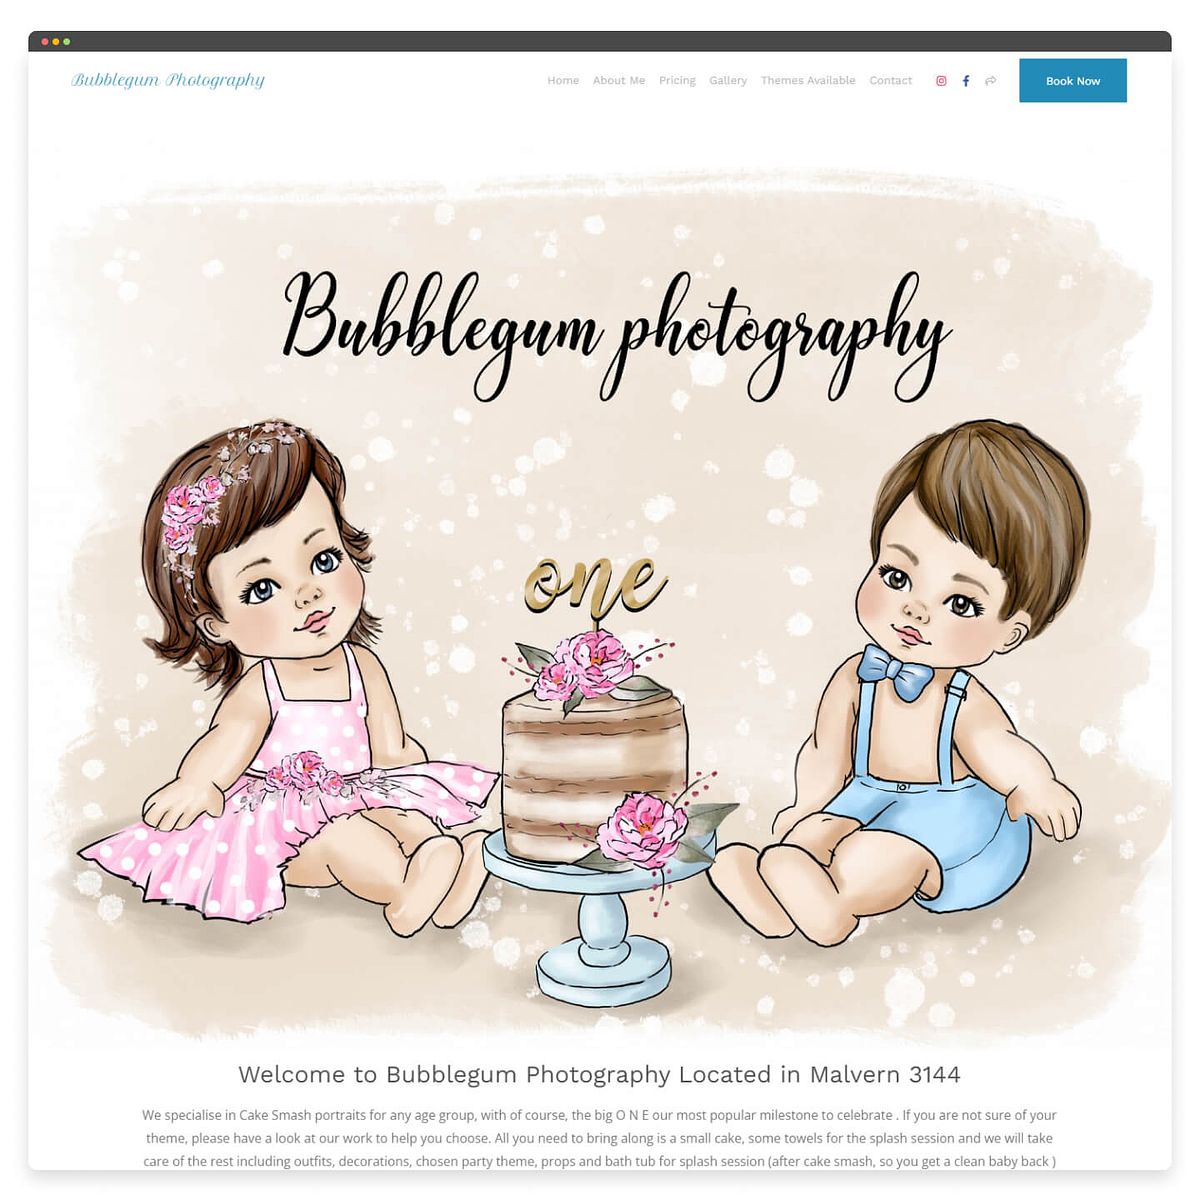 Bubblegum Photography - Portfólio de fotografia para recém-nascidos